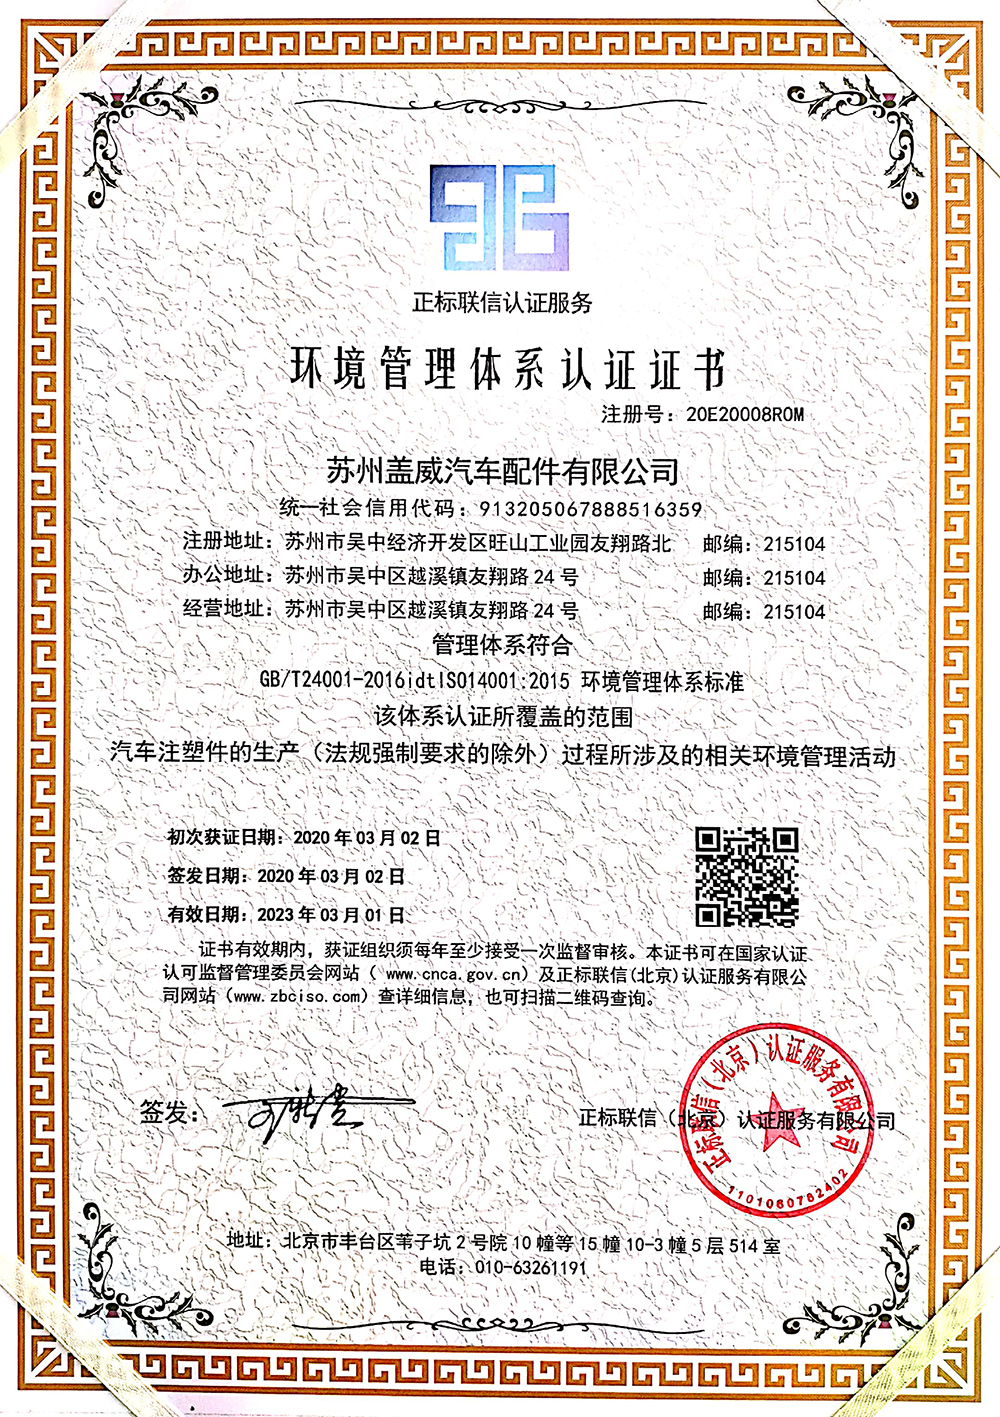 苏州盖威汽车配件有限公司ISO14001：2015环境管理体系认证证书--中文2.jpg